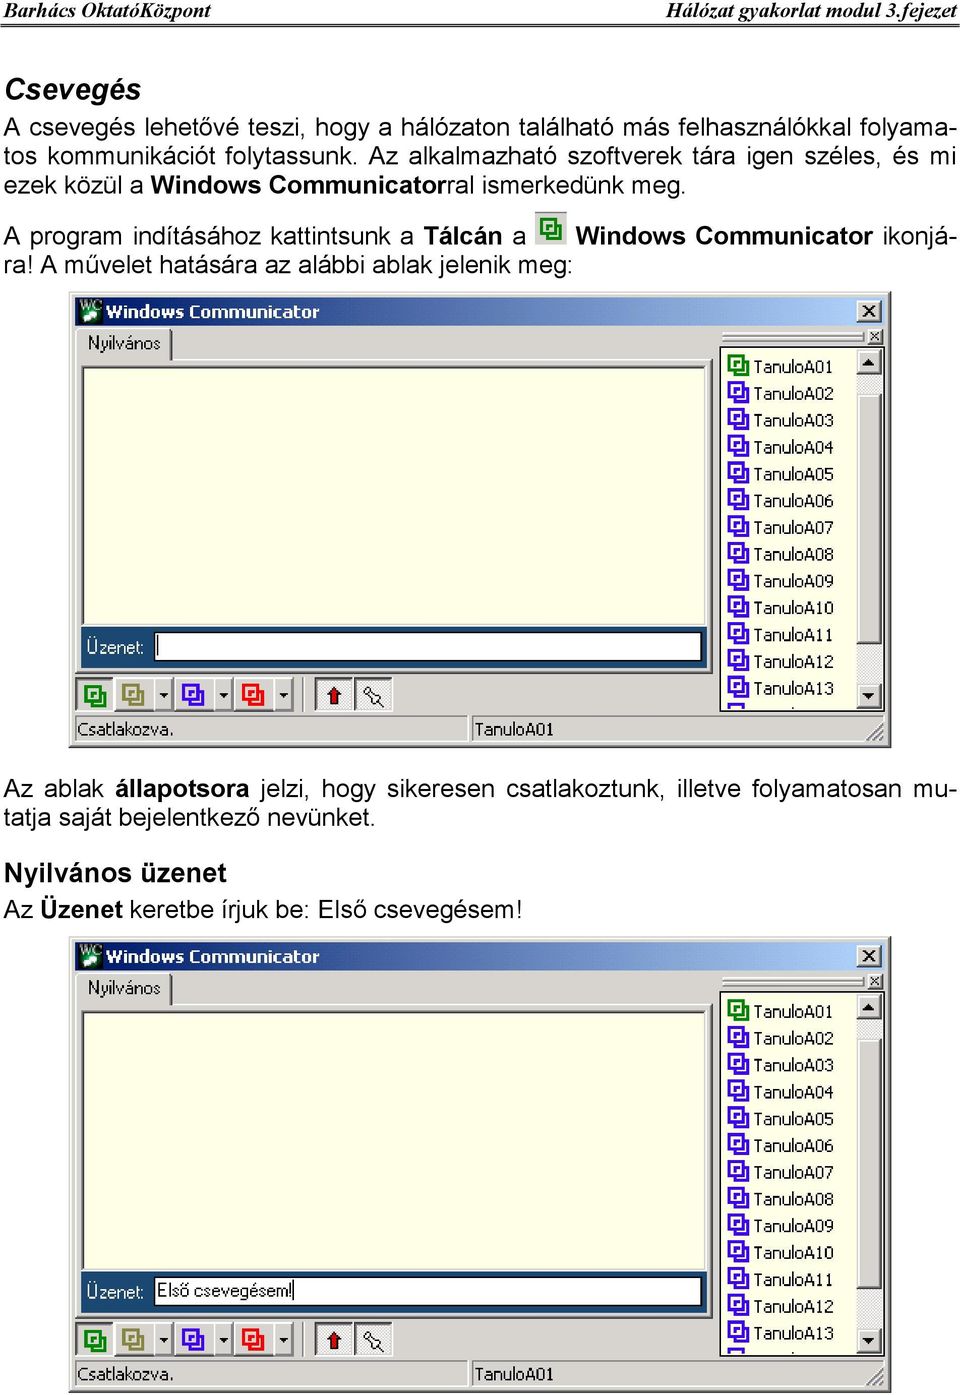 A program indításához kattintsunk a Tálcán a Windows Communicator ikonjára!